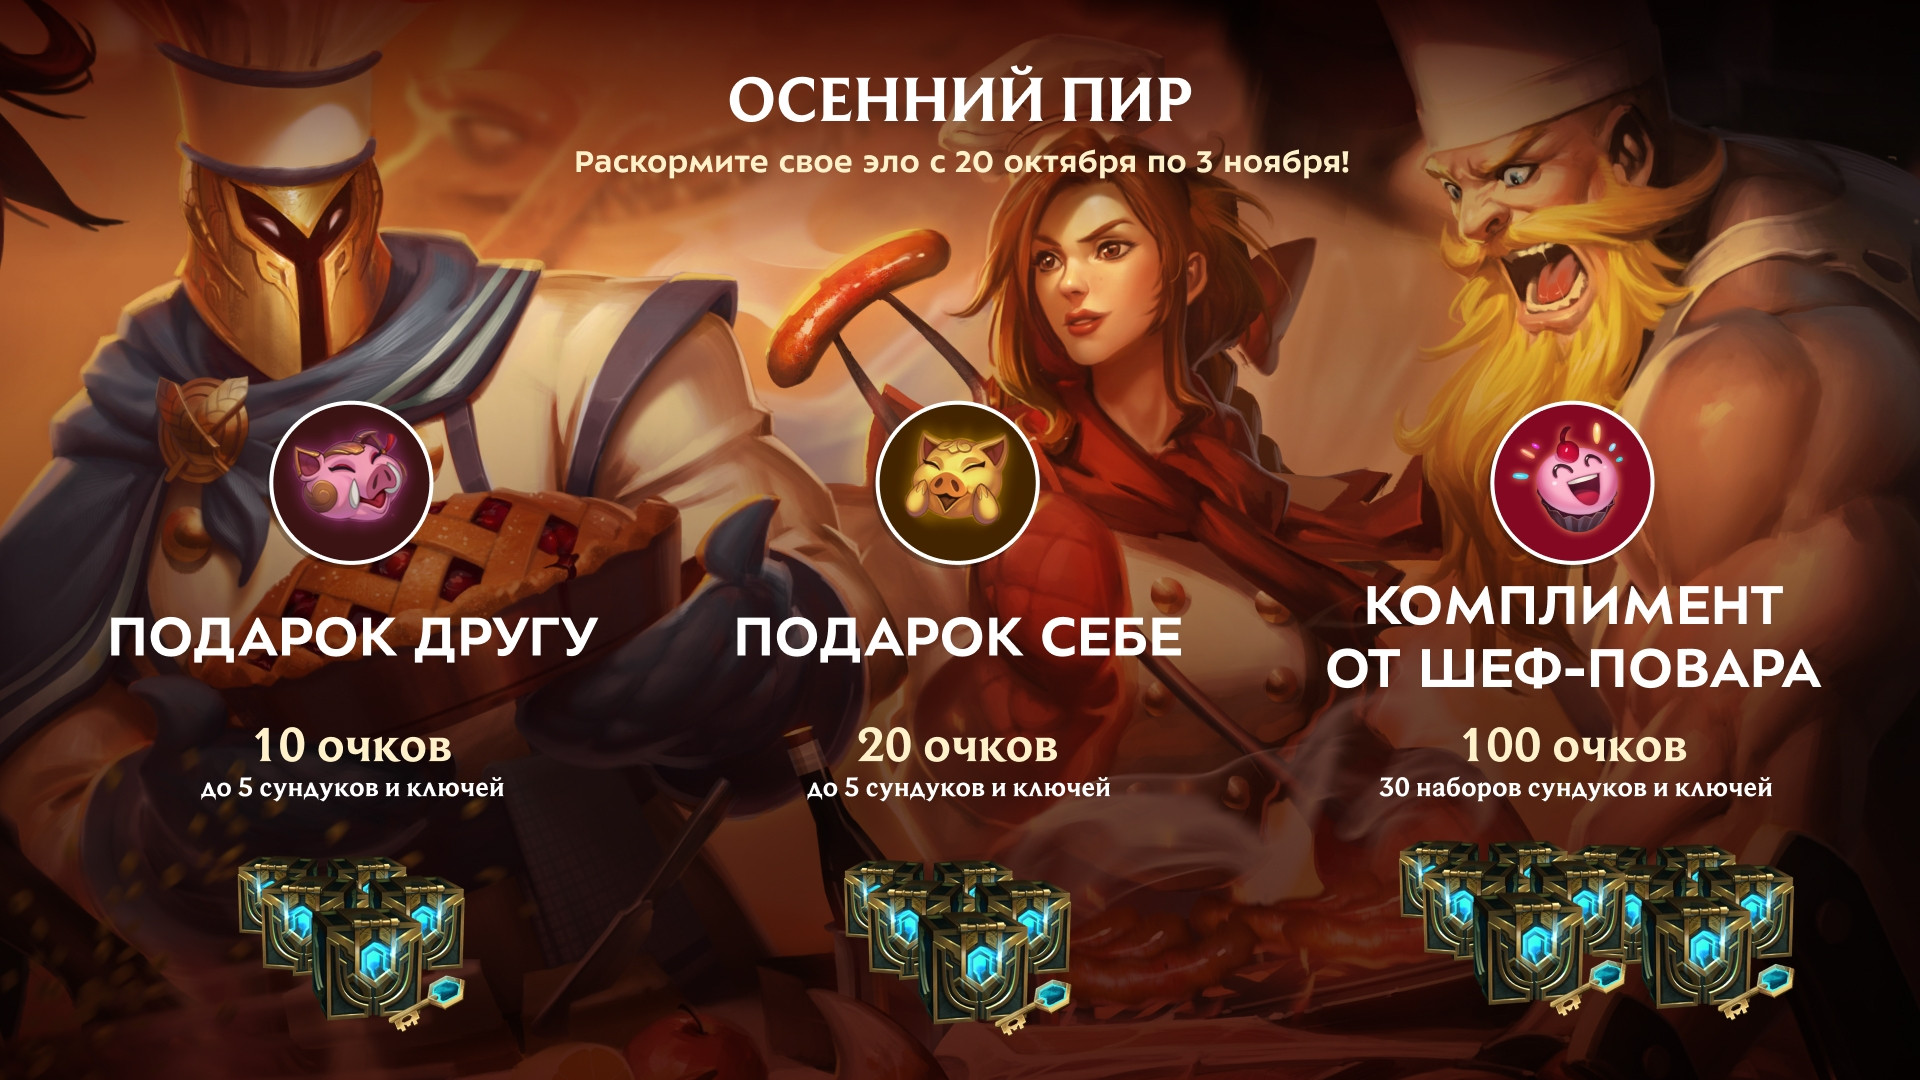 League of Legends - На русскоязычном сервере стартовал “Осенний пир”